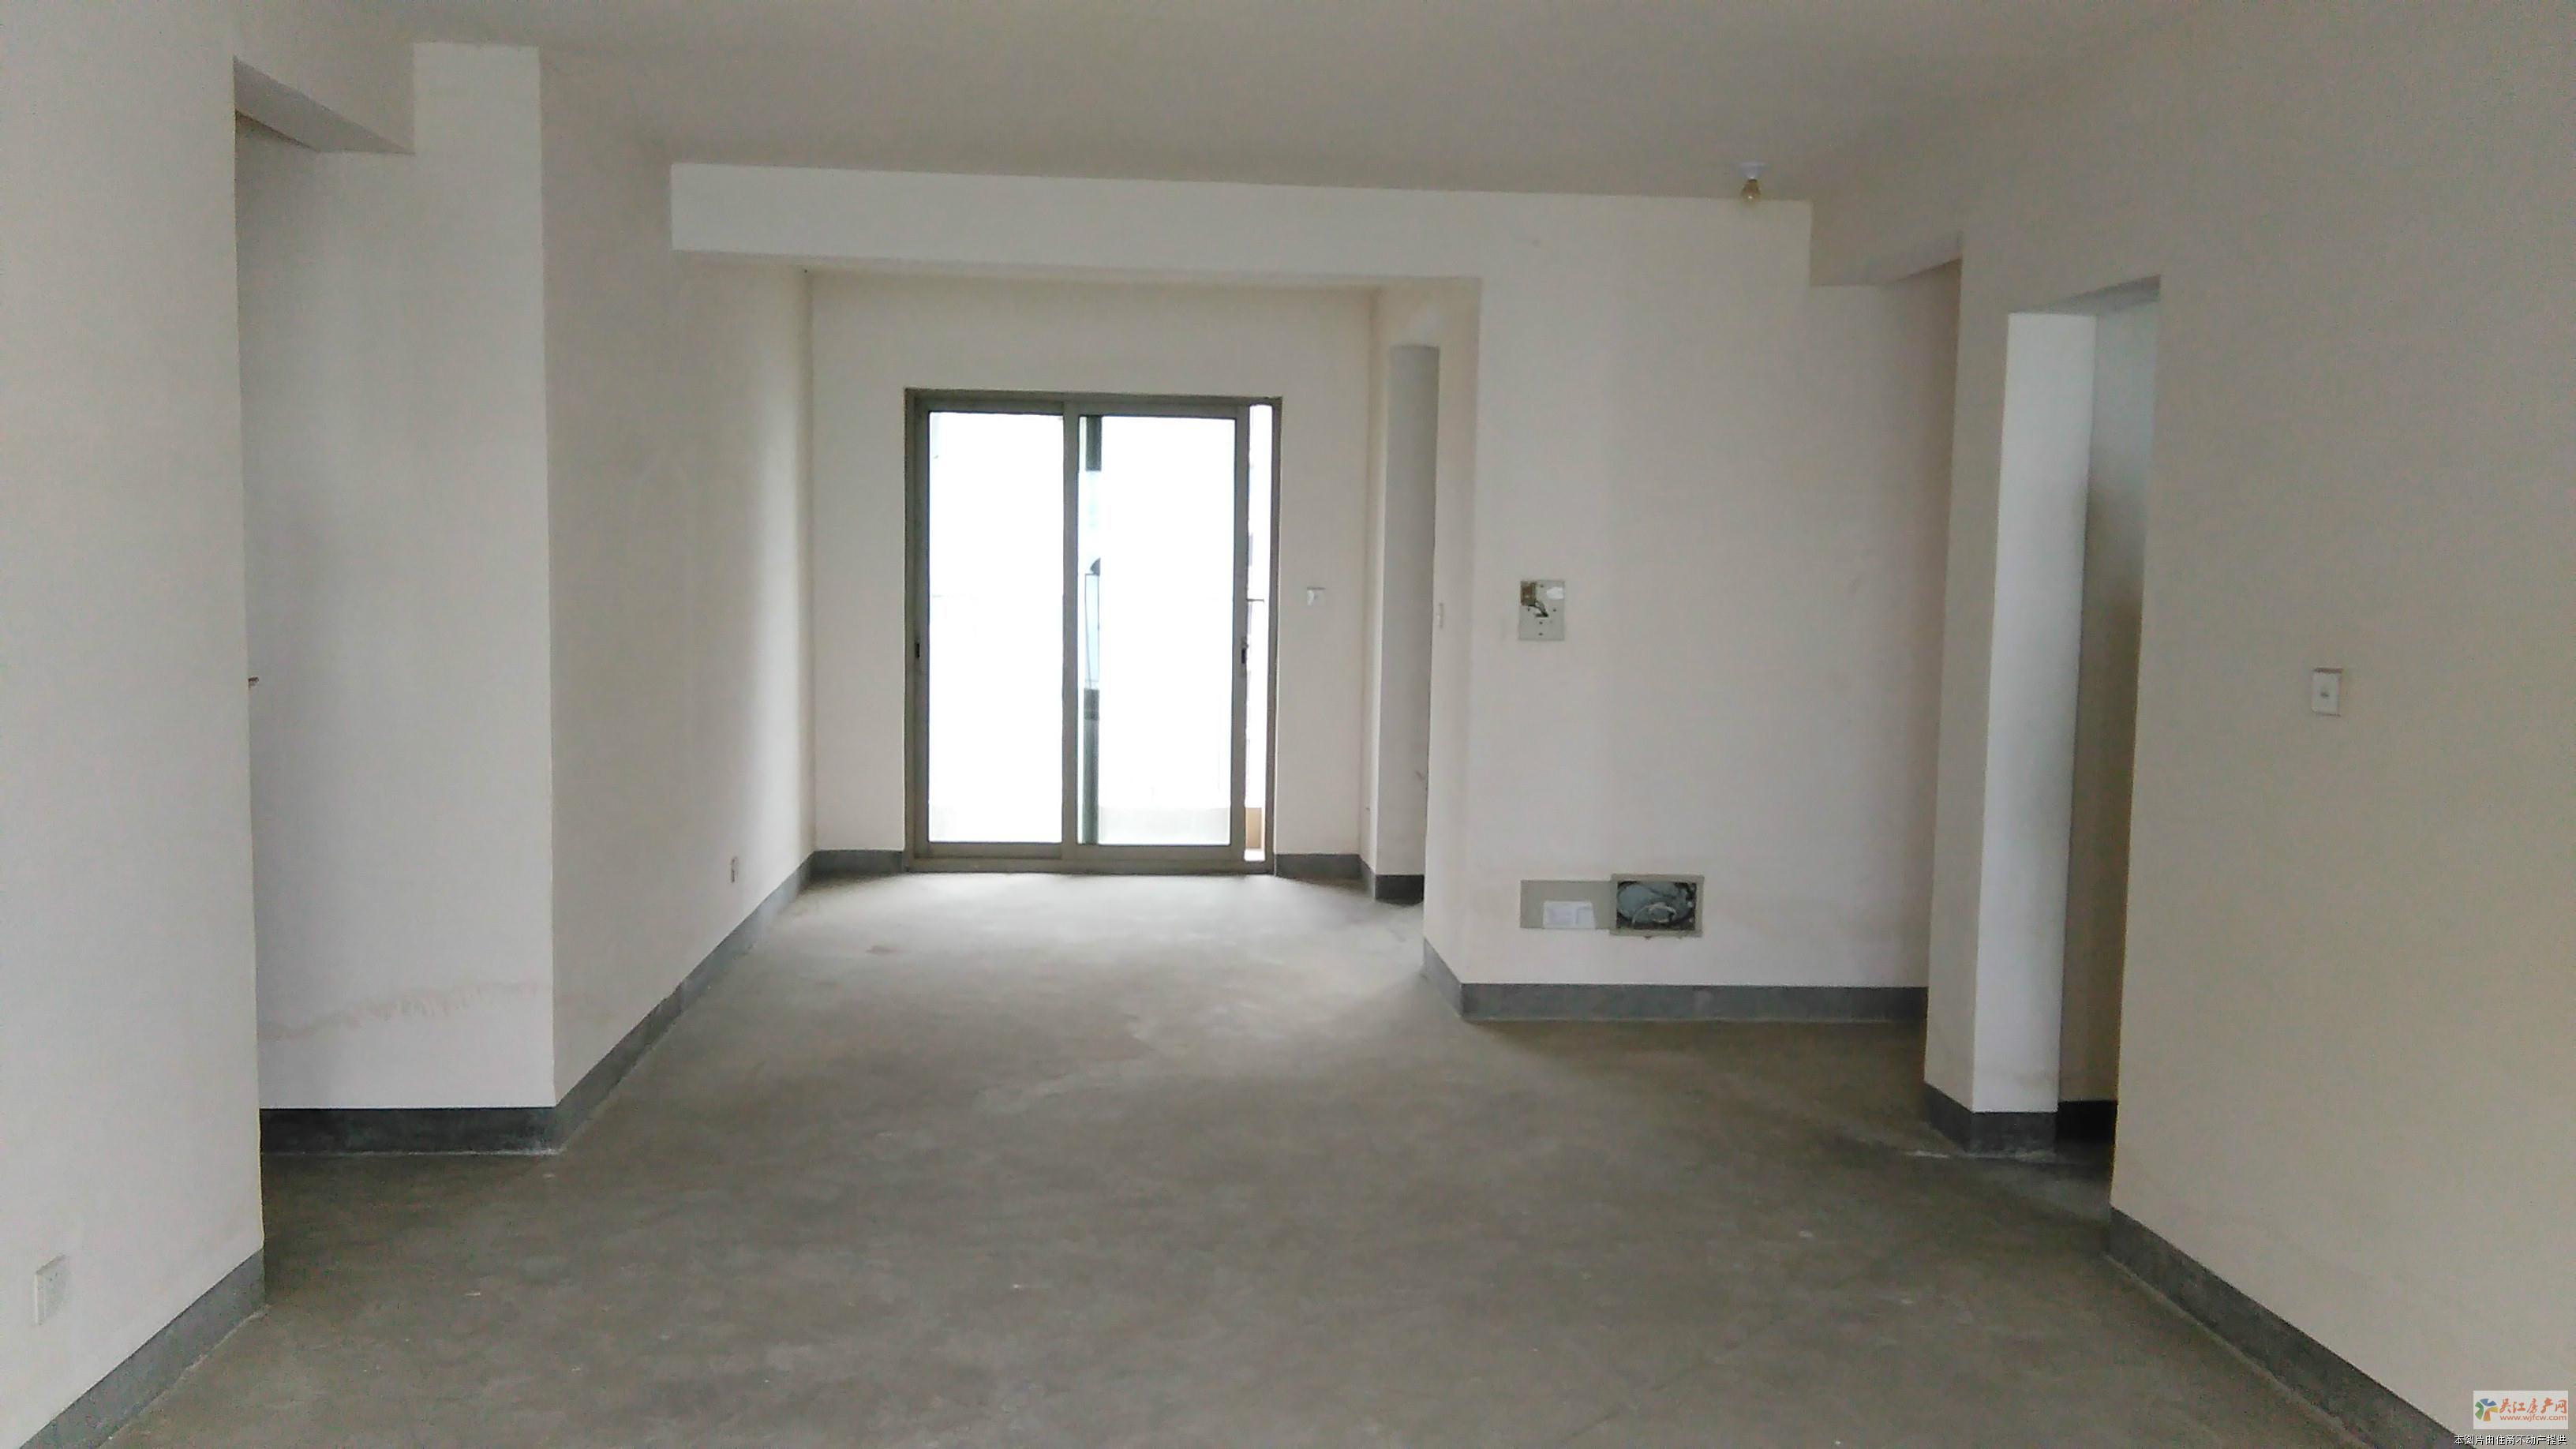 drb明珠城紫桂苑 3室2厅1卫 89平方米 132万出售